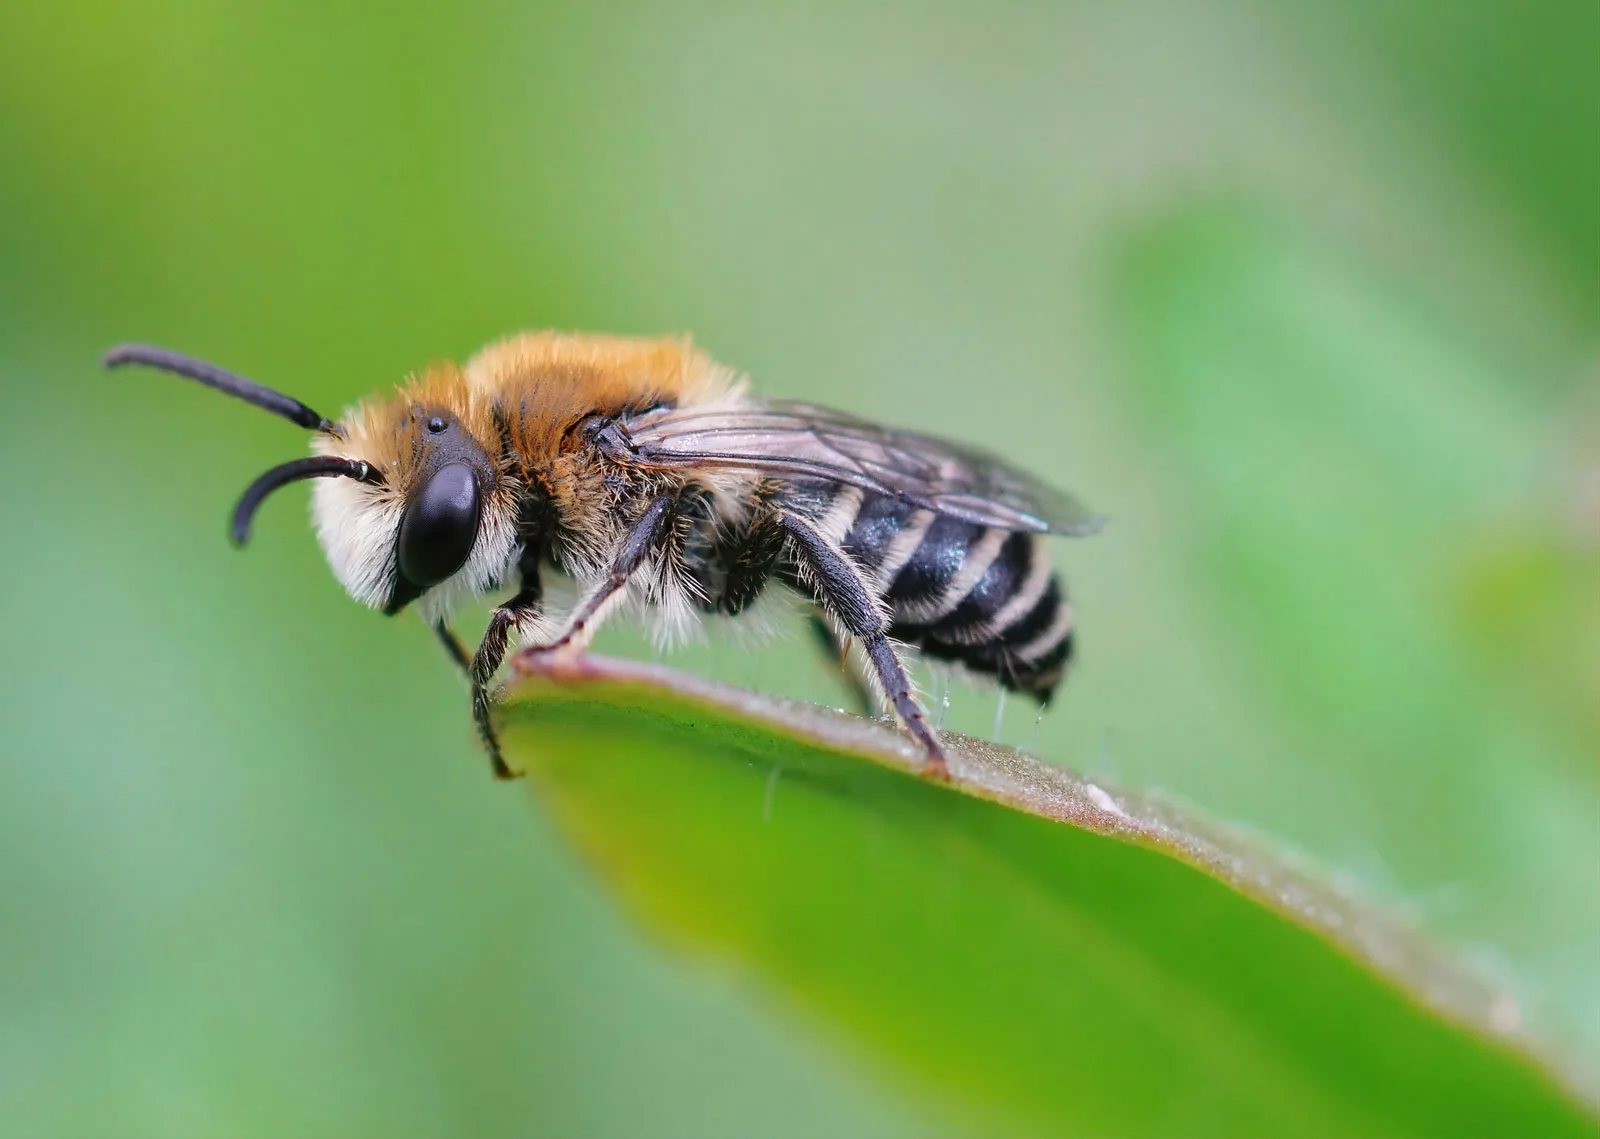 Βίντεο:Δείτε τι συμβαίνει όταν μας τσιμπάει μέλισσα – «Οι λεπίδες τραβούν προς τα κάτω τη σάρκα»